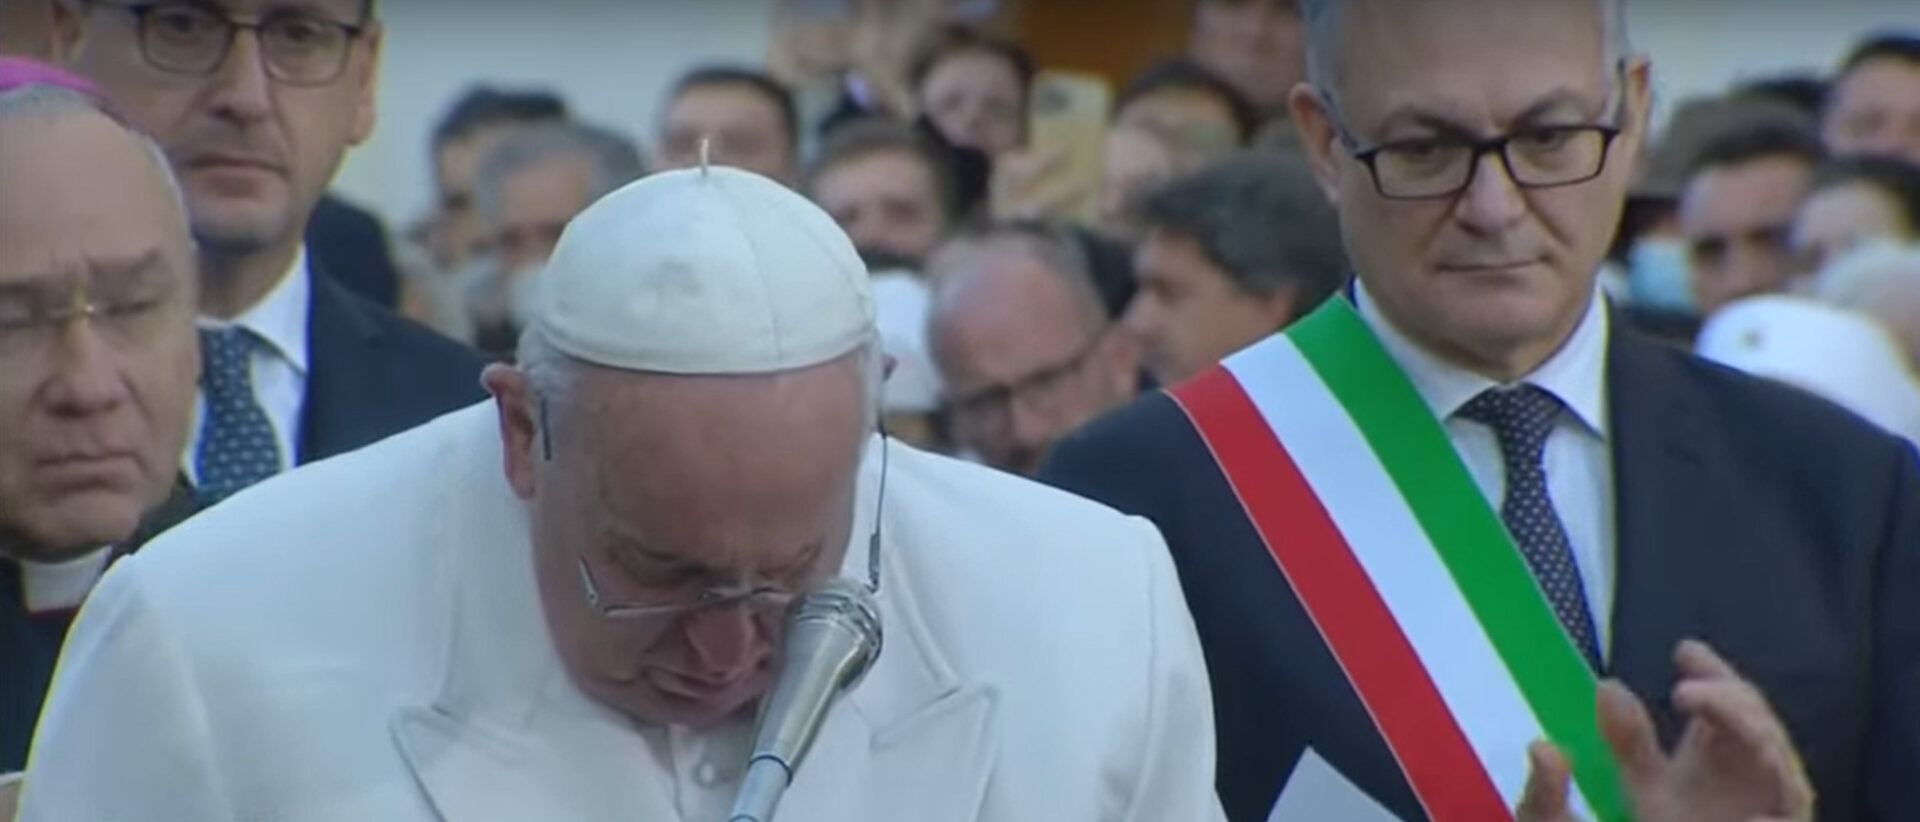 Der Papst weint beim Gebet